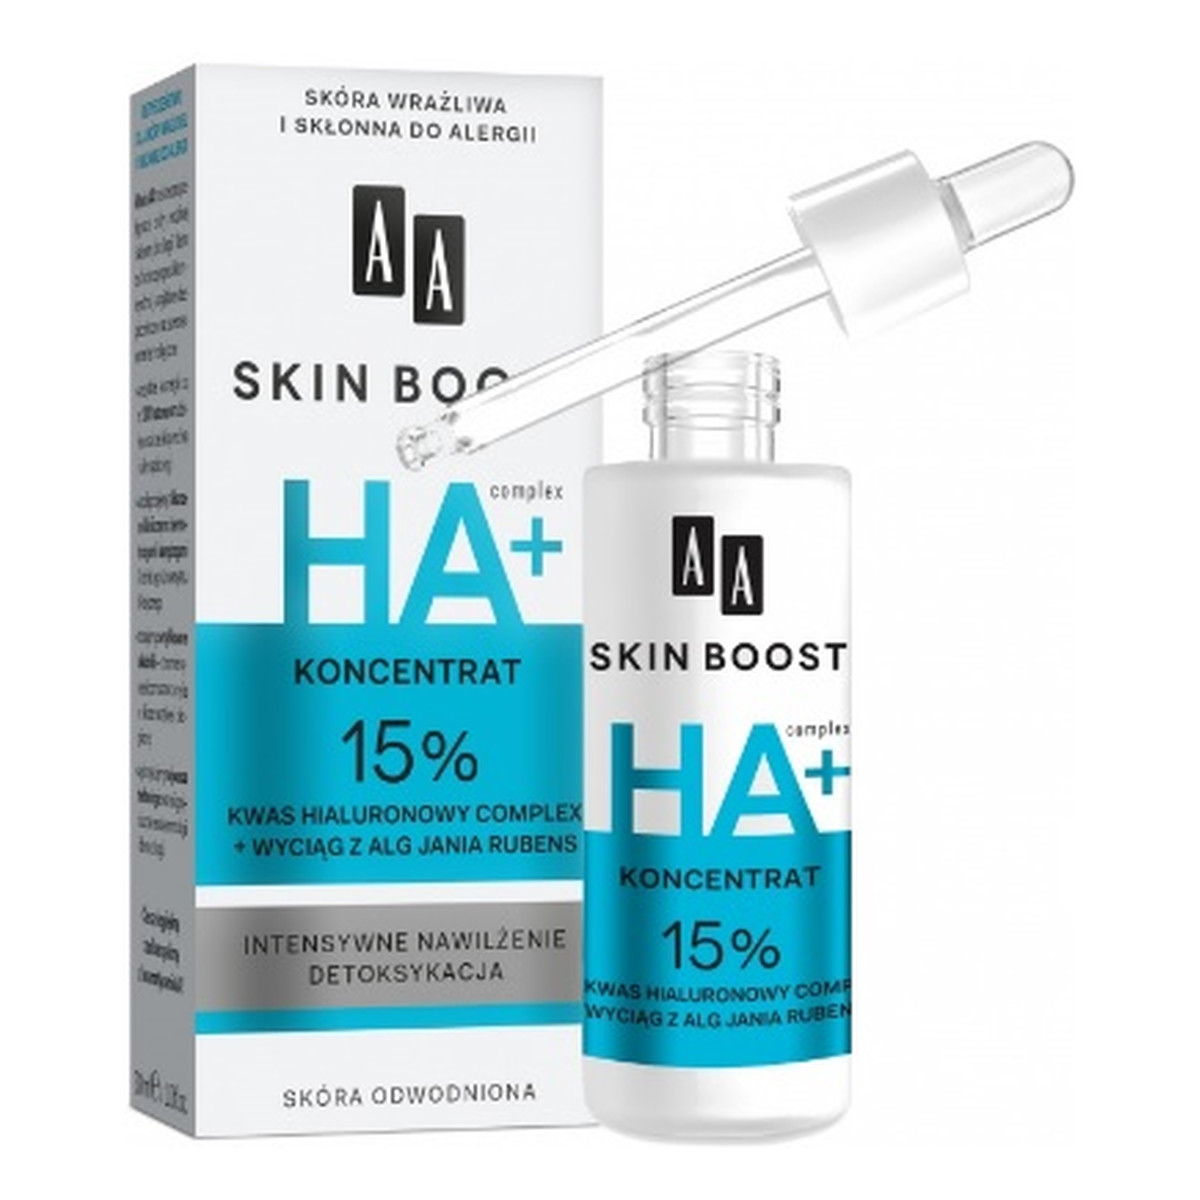 AA Skin Boost Koncentrat 15% kwas hialuronowy complex + wyciąg z alg Jania rubens 30ml